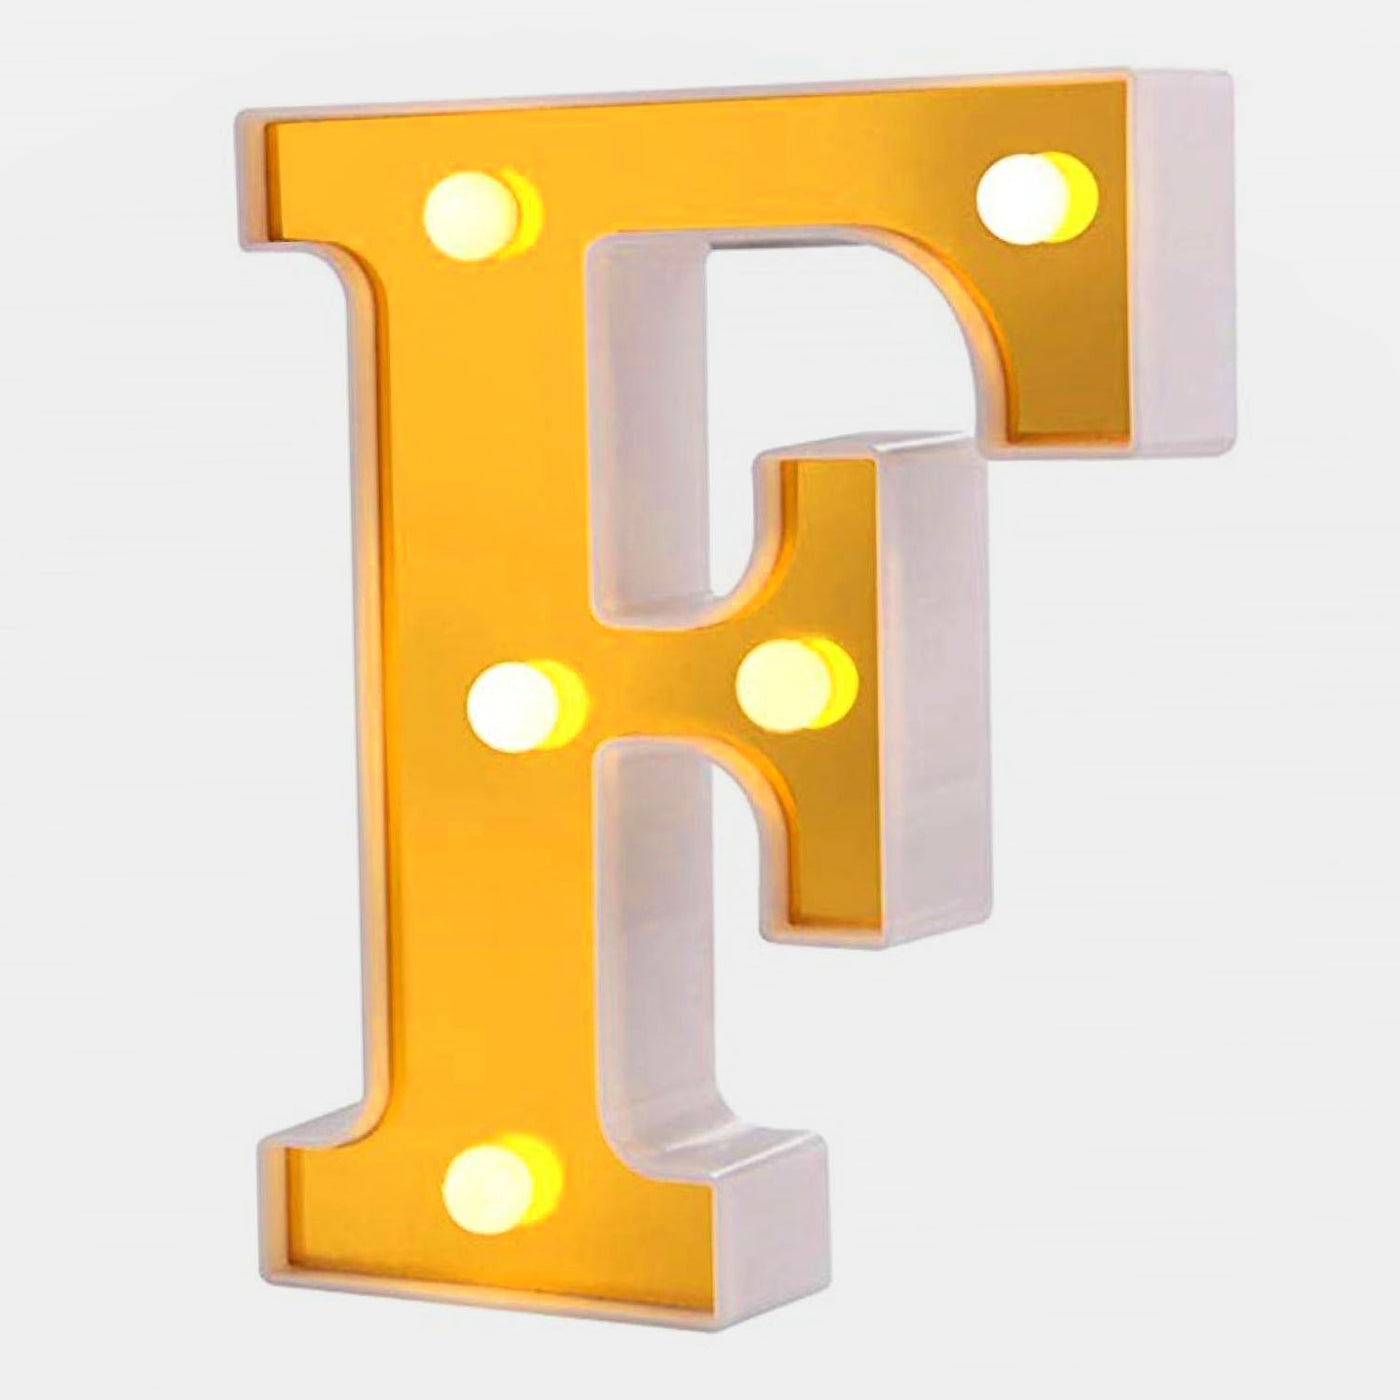 Decoration HB LED Light Golden "F"